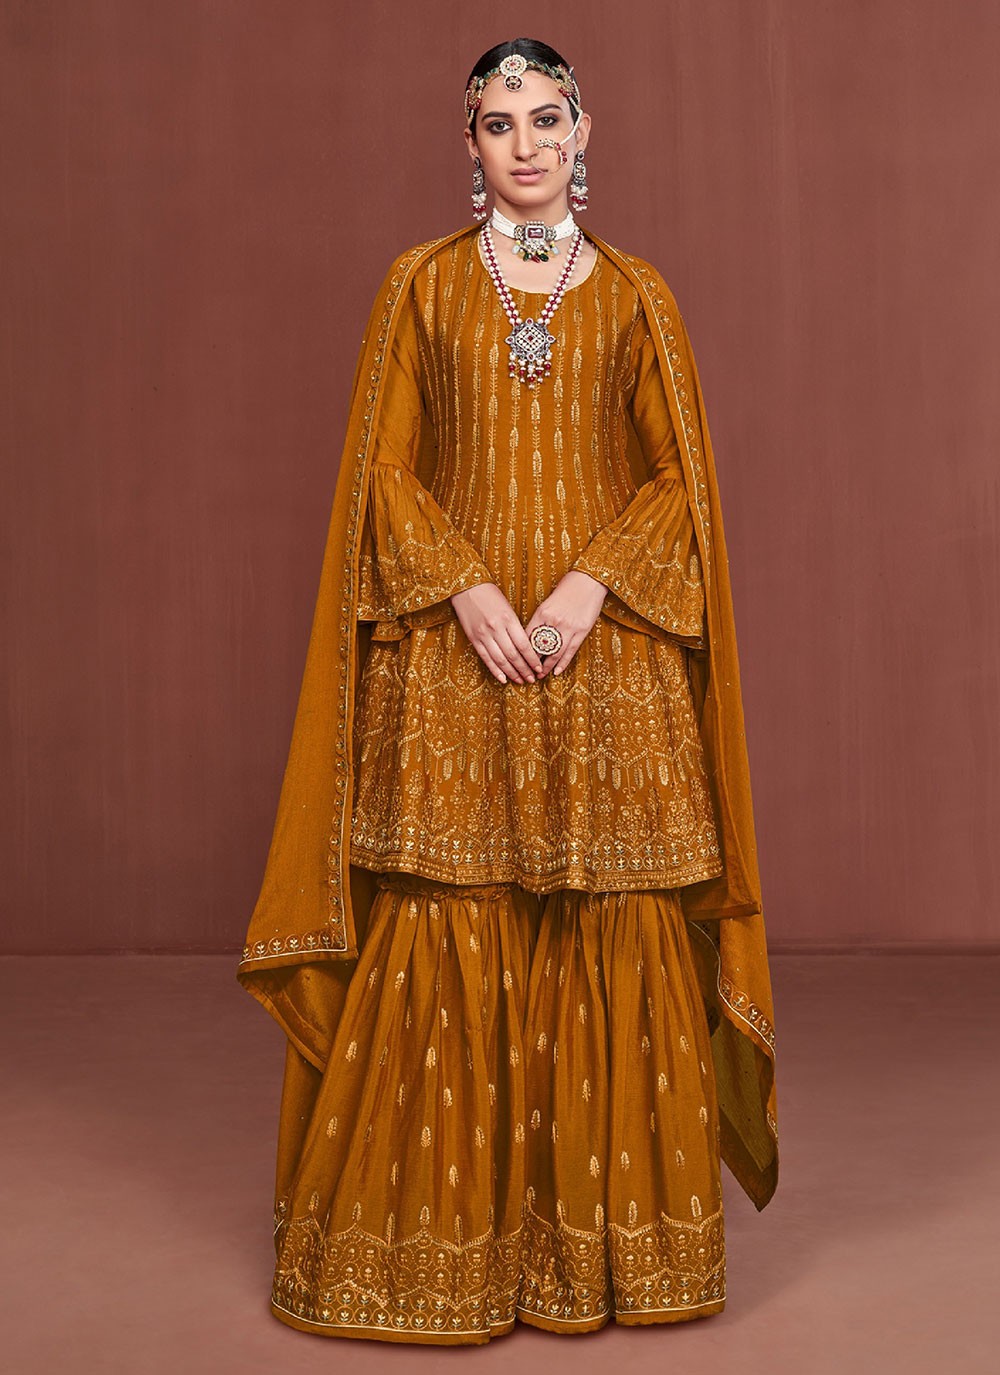 Mustard Color Designer Pakistani Salwar Suit